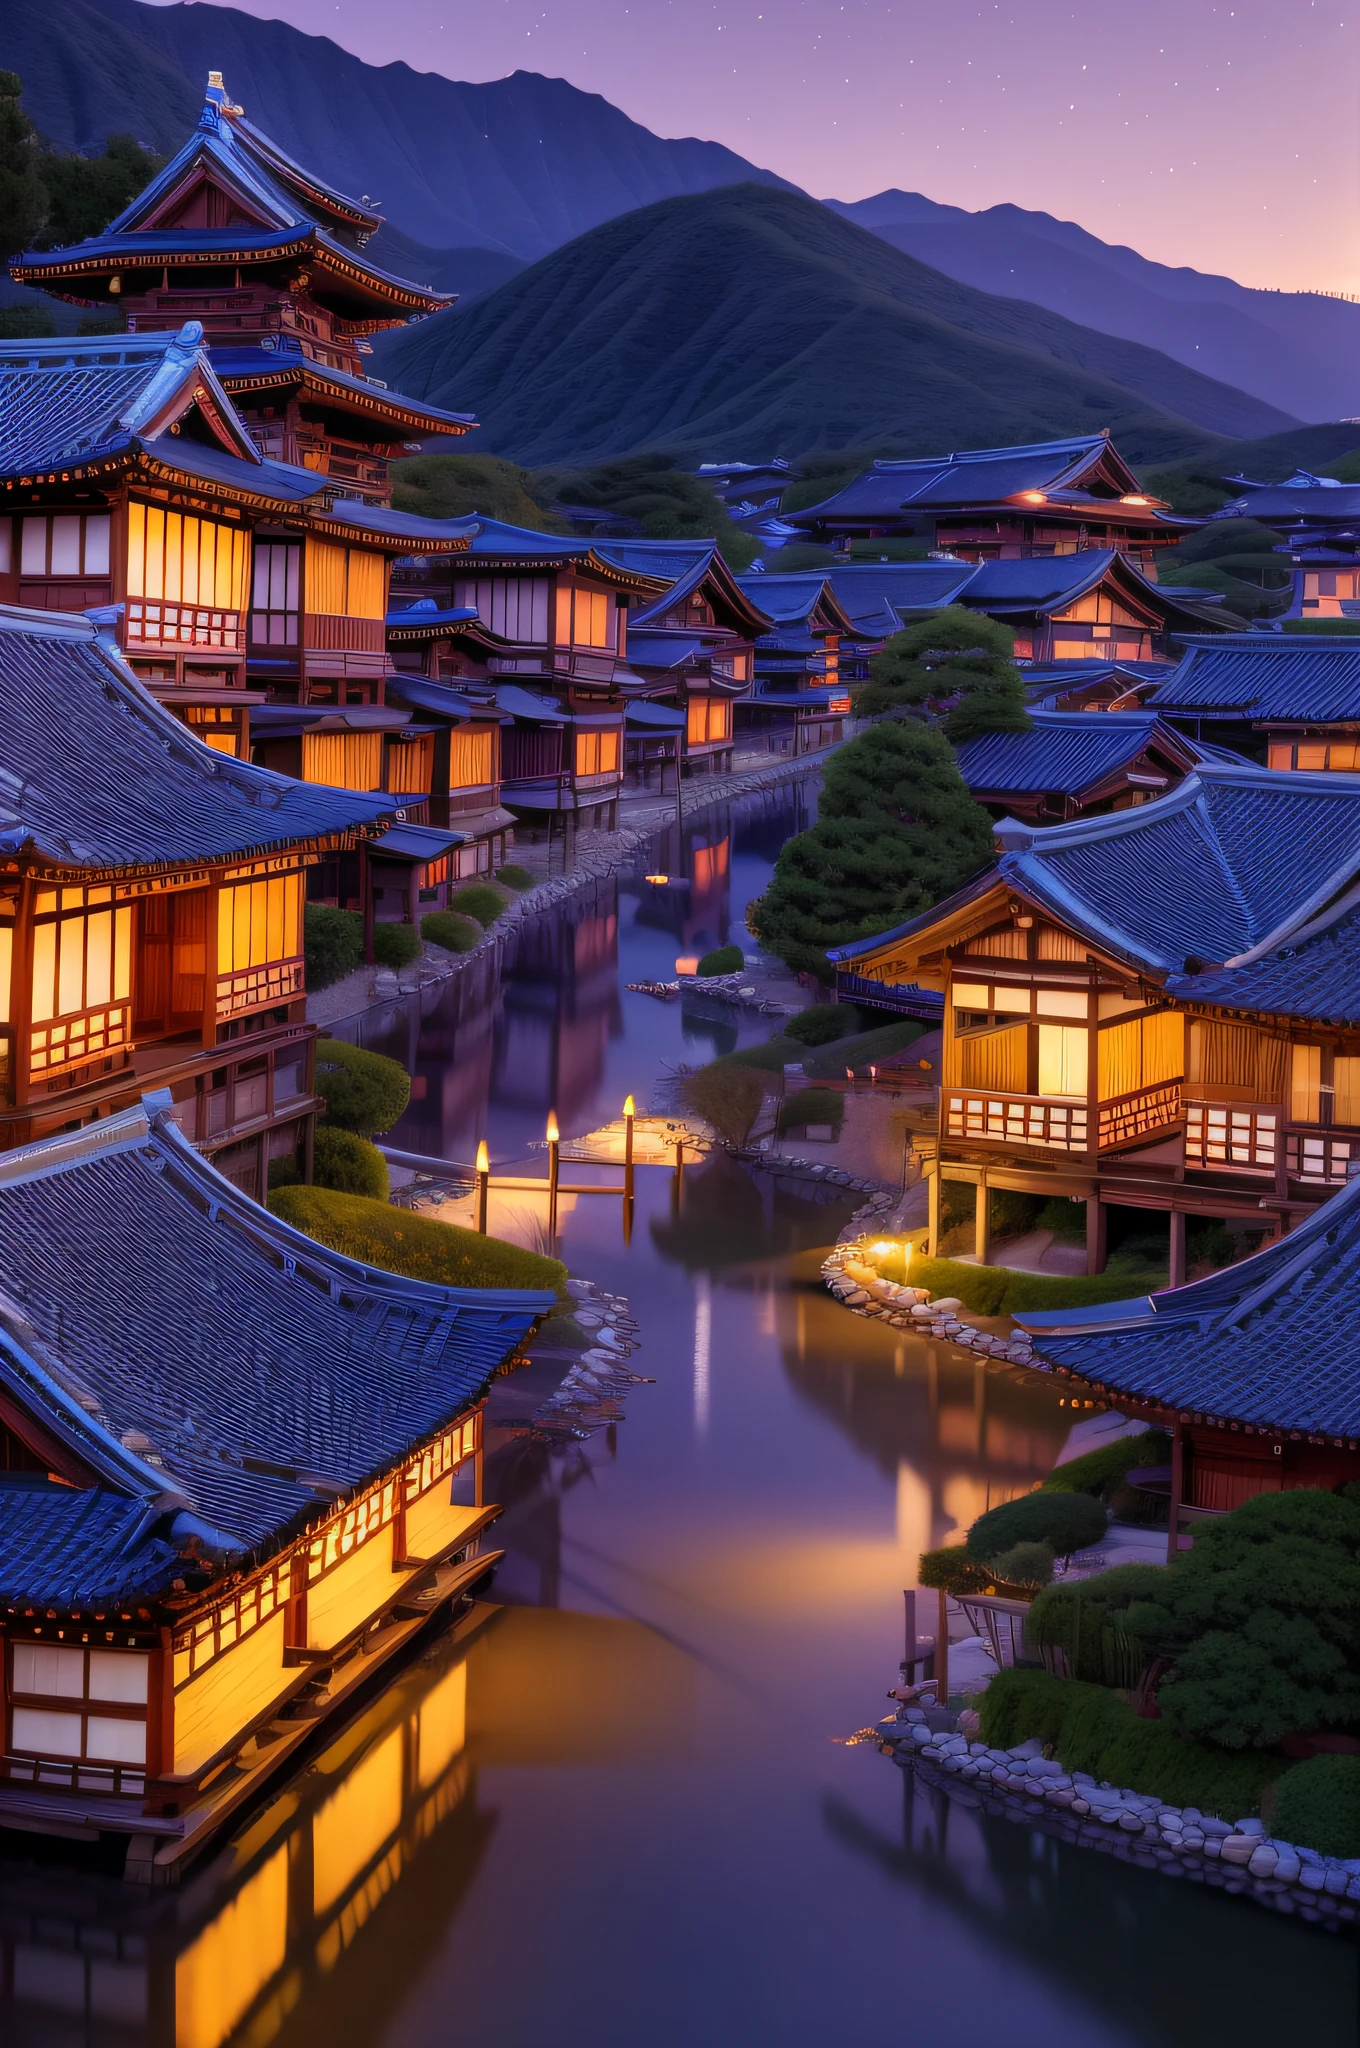 불빛이 많은 마을, 일본 마을, 일본 도시, 일본 마을, 초현실적인 도시 사진, 오래된 아시아 마을, 일몰, 일본 고대 성, 조명이 아름다운 건물들, 밤에, 아름답고 심미적이다, 사진술, 영화 같은, 8K, 매우 상세한